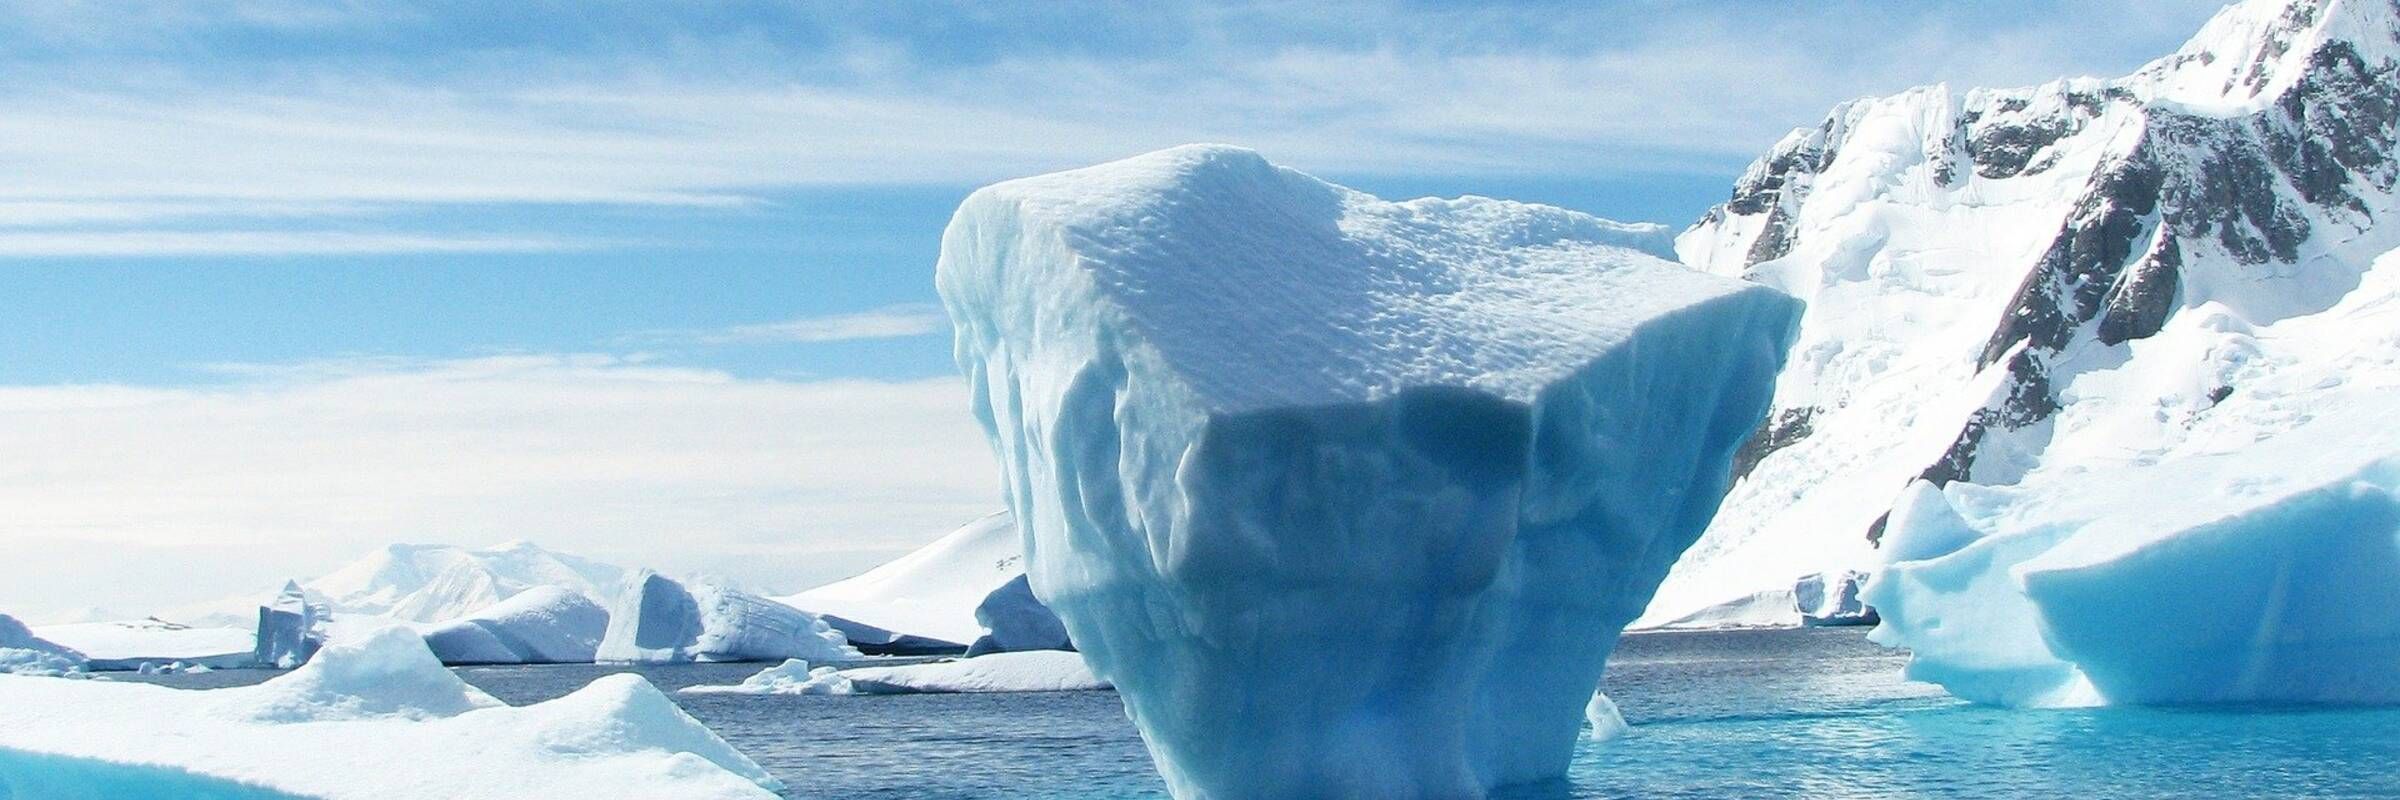 csm_iceberg-404966_1920_af44a8adc9.jpg